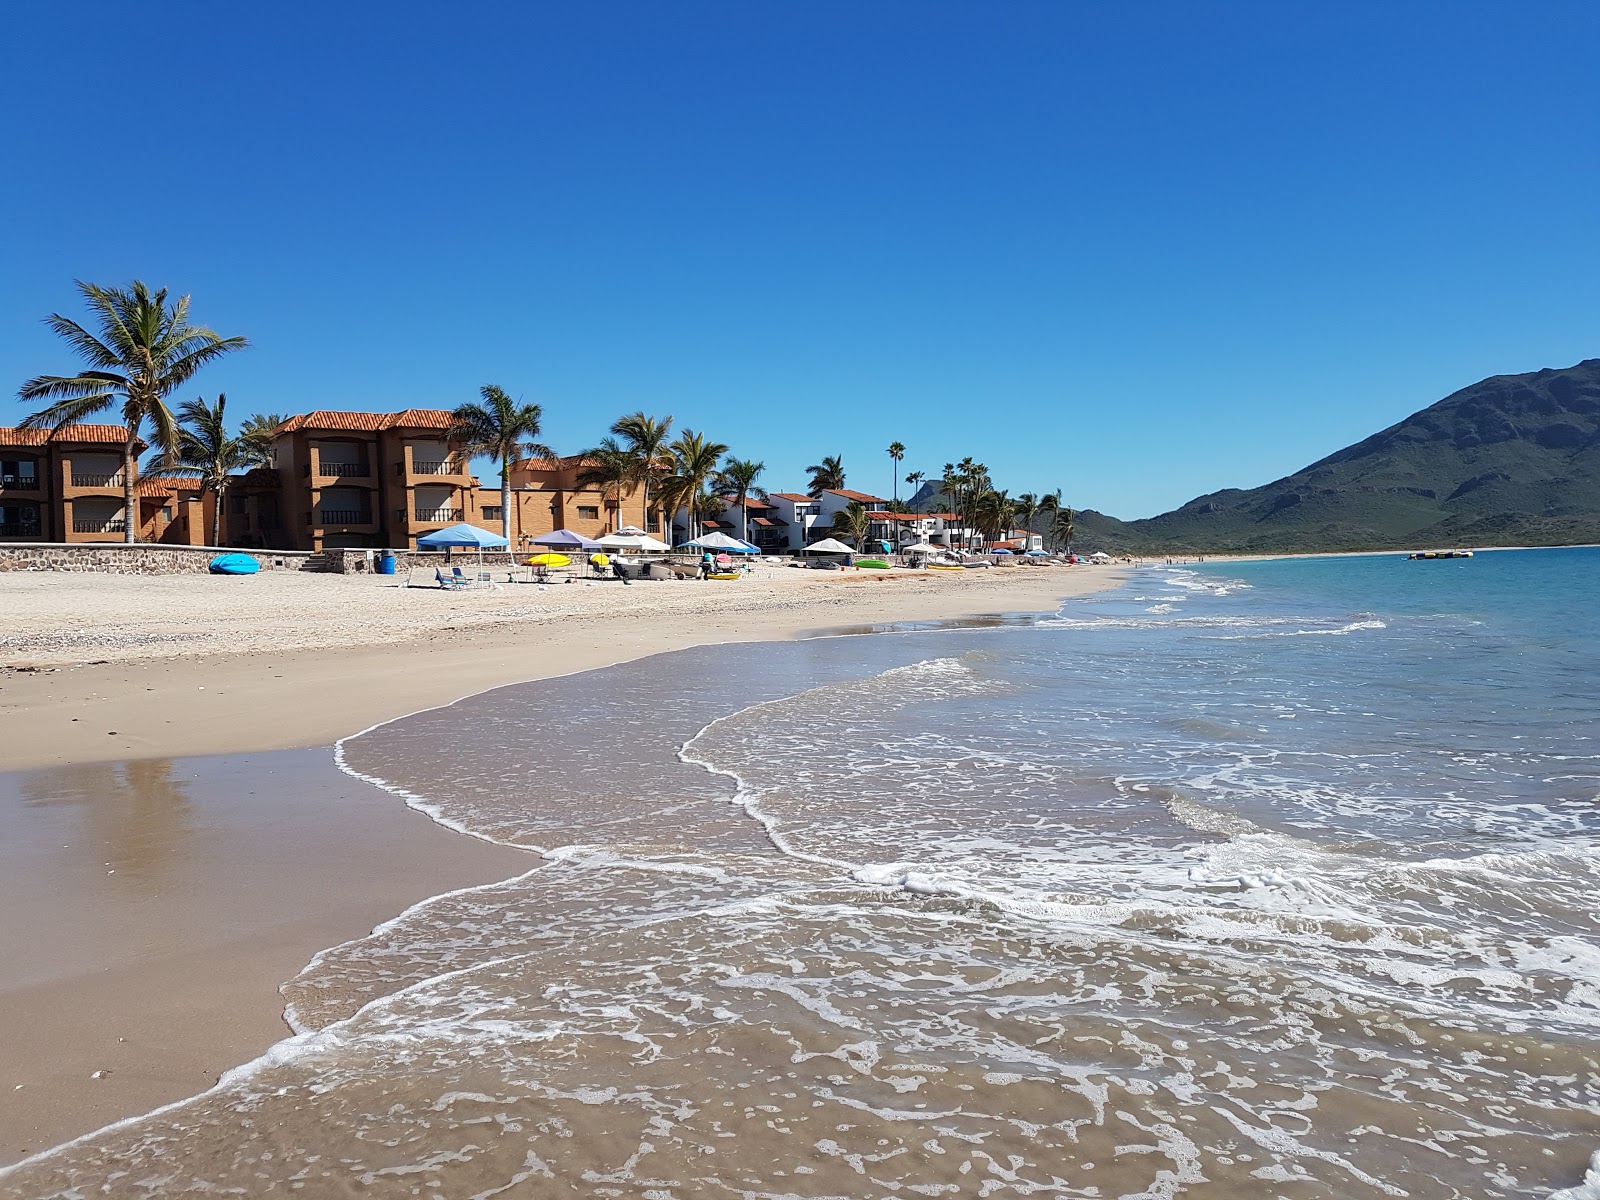 Fotografie cu Playa San Carlos cu o suprafață de nisip strălucitor